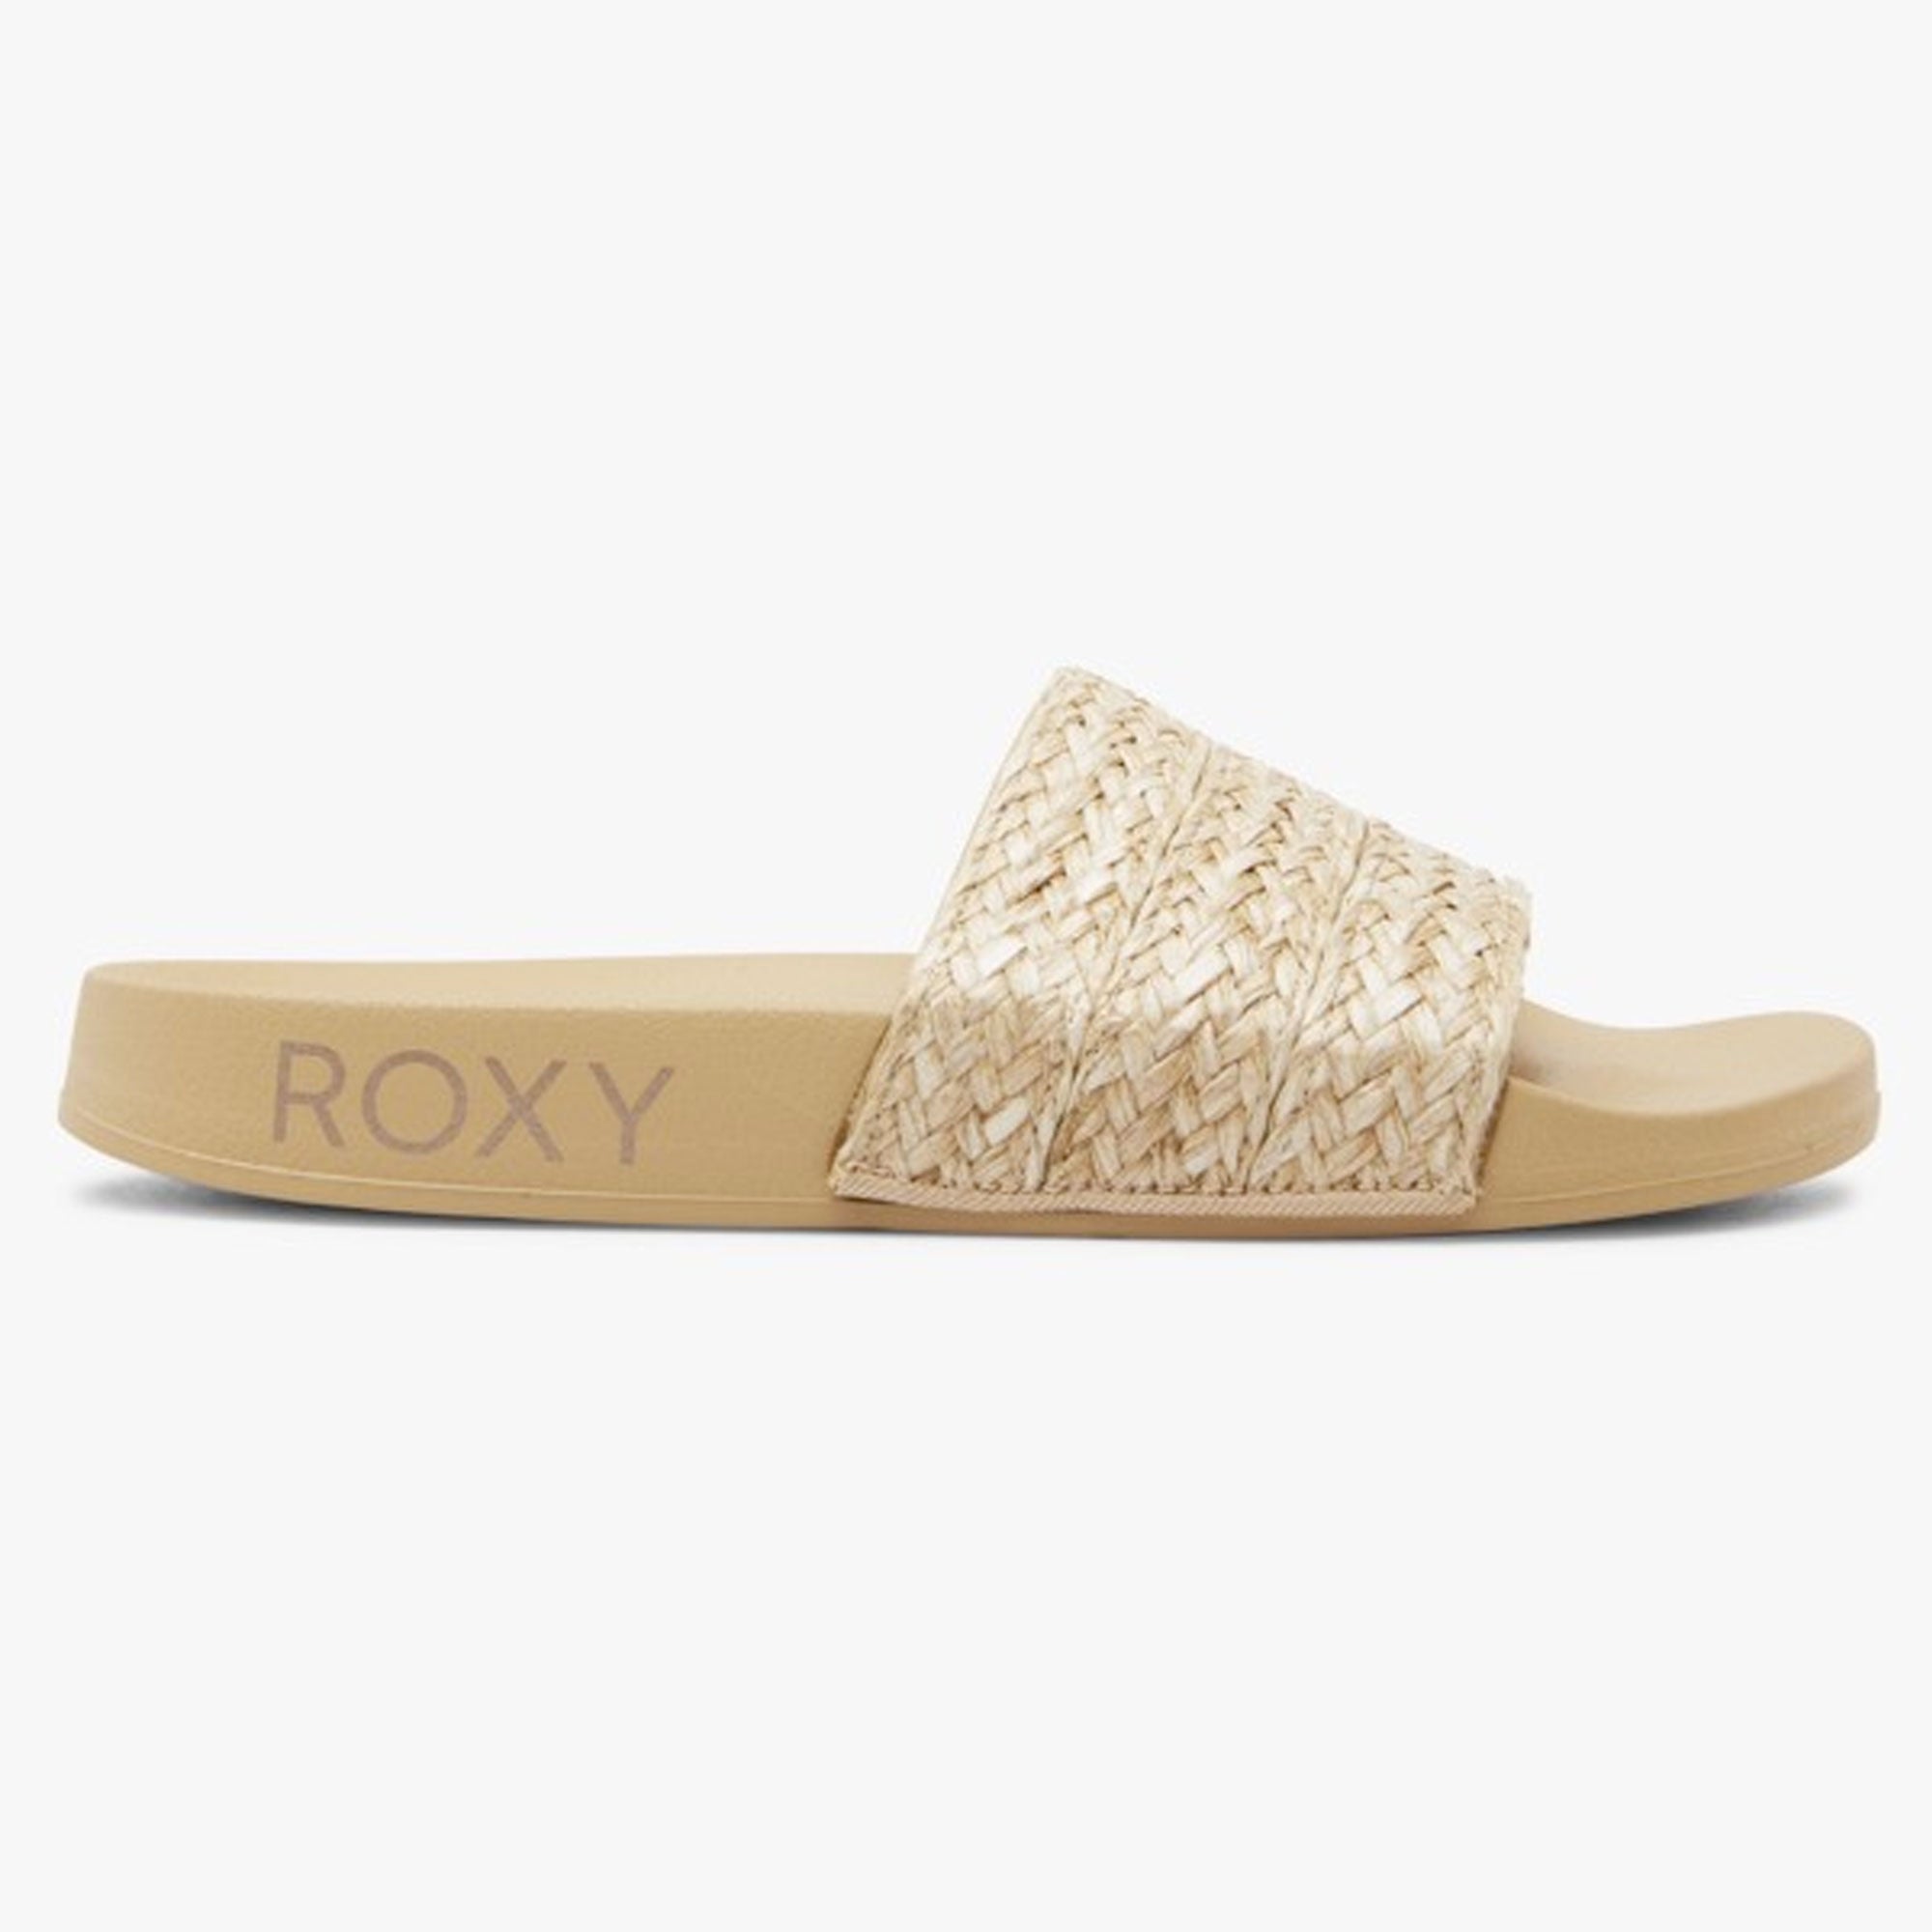 Roxy Slippy Jute Women's Sandals